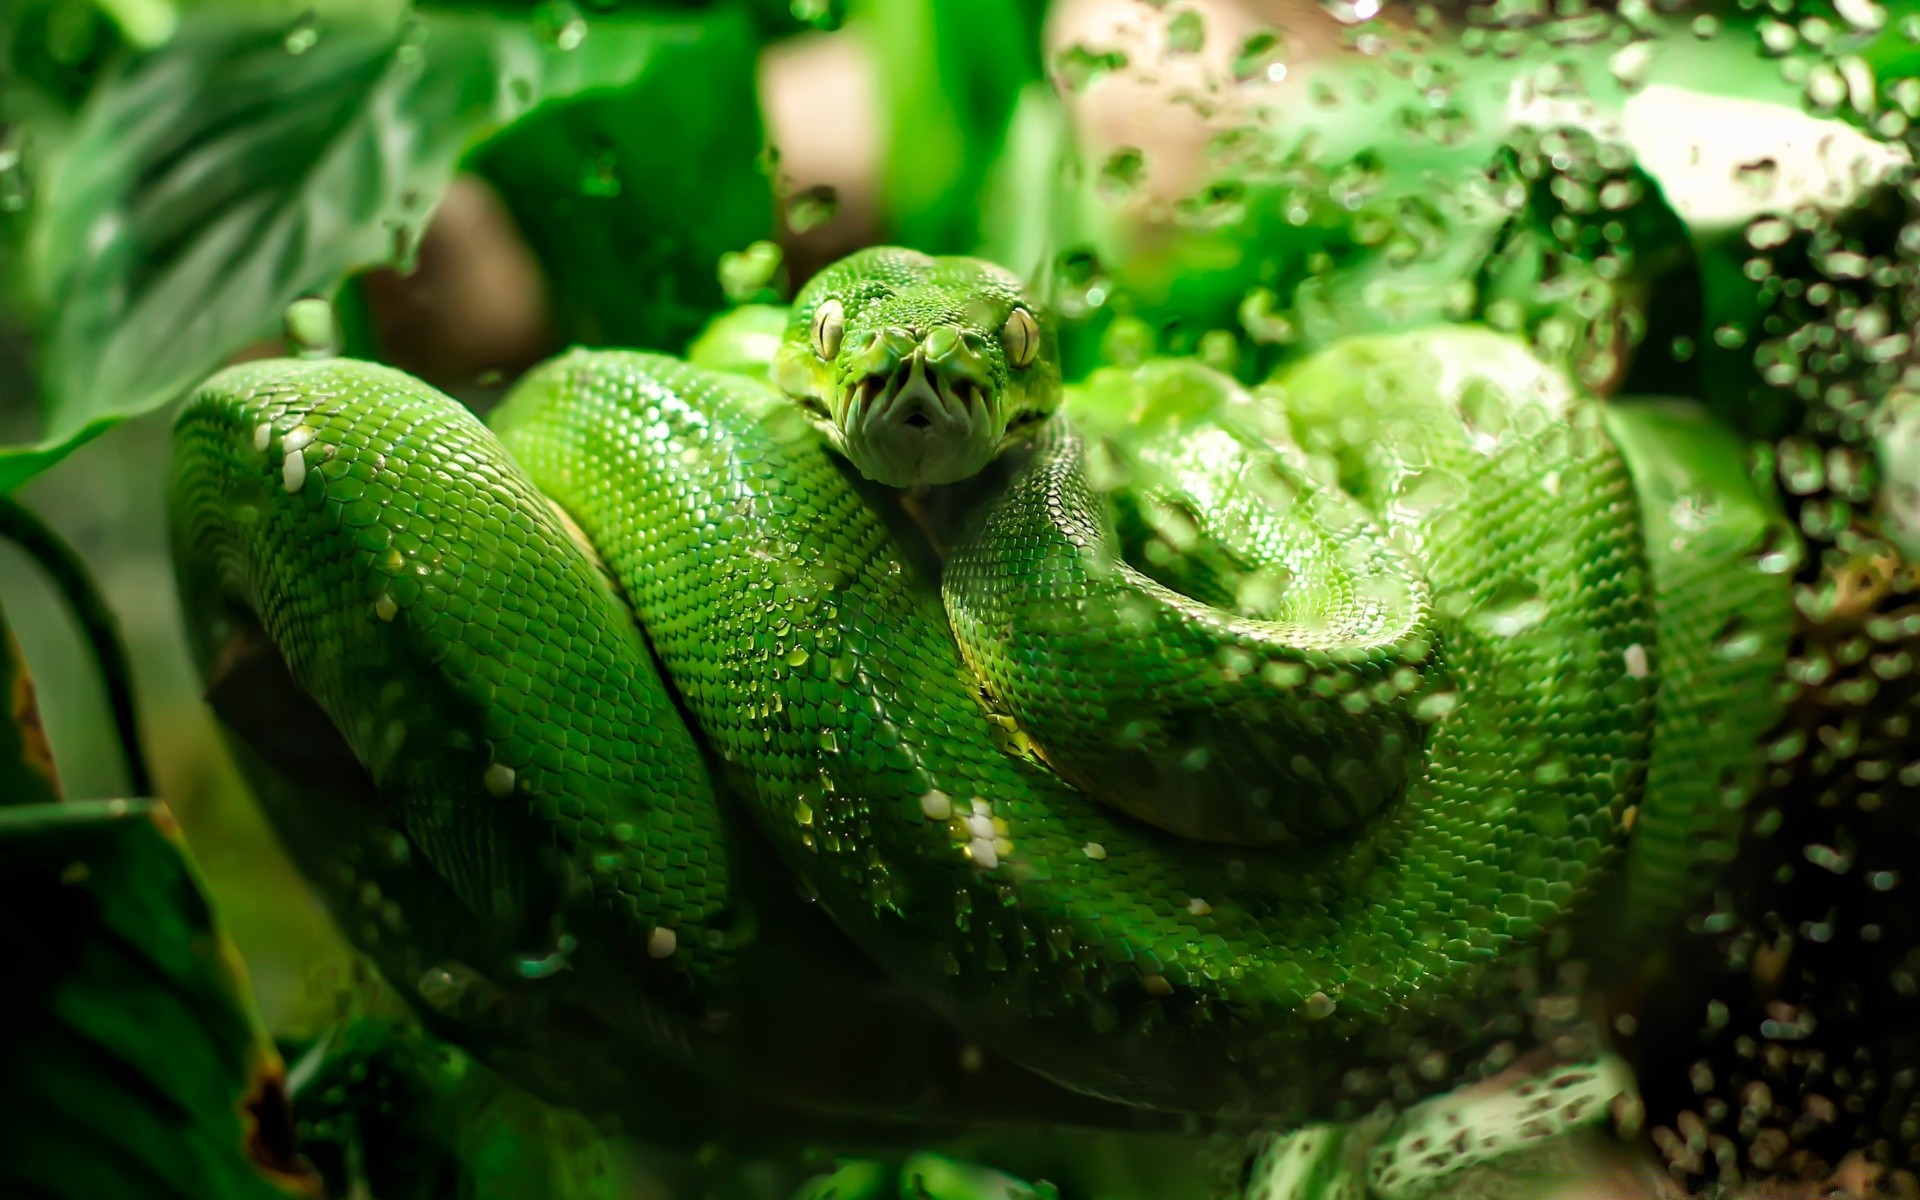 рептилии и лягушки змея гадина природа лист питон животное экзотические дикой природы рабочего стола вайпер флора боа тропический цвет еда